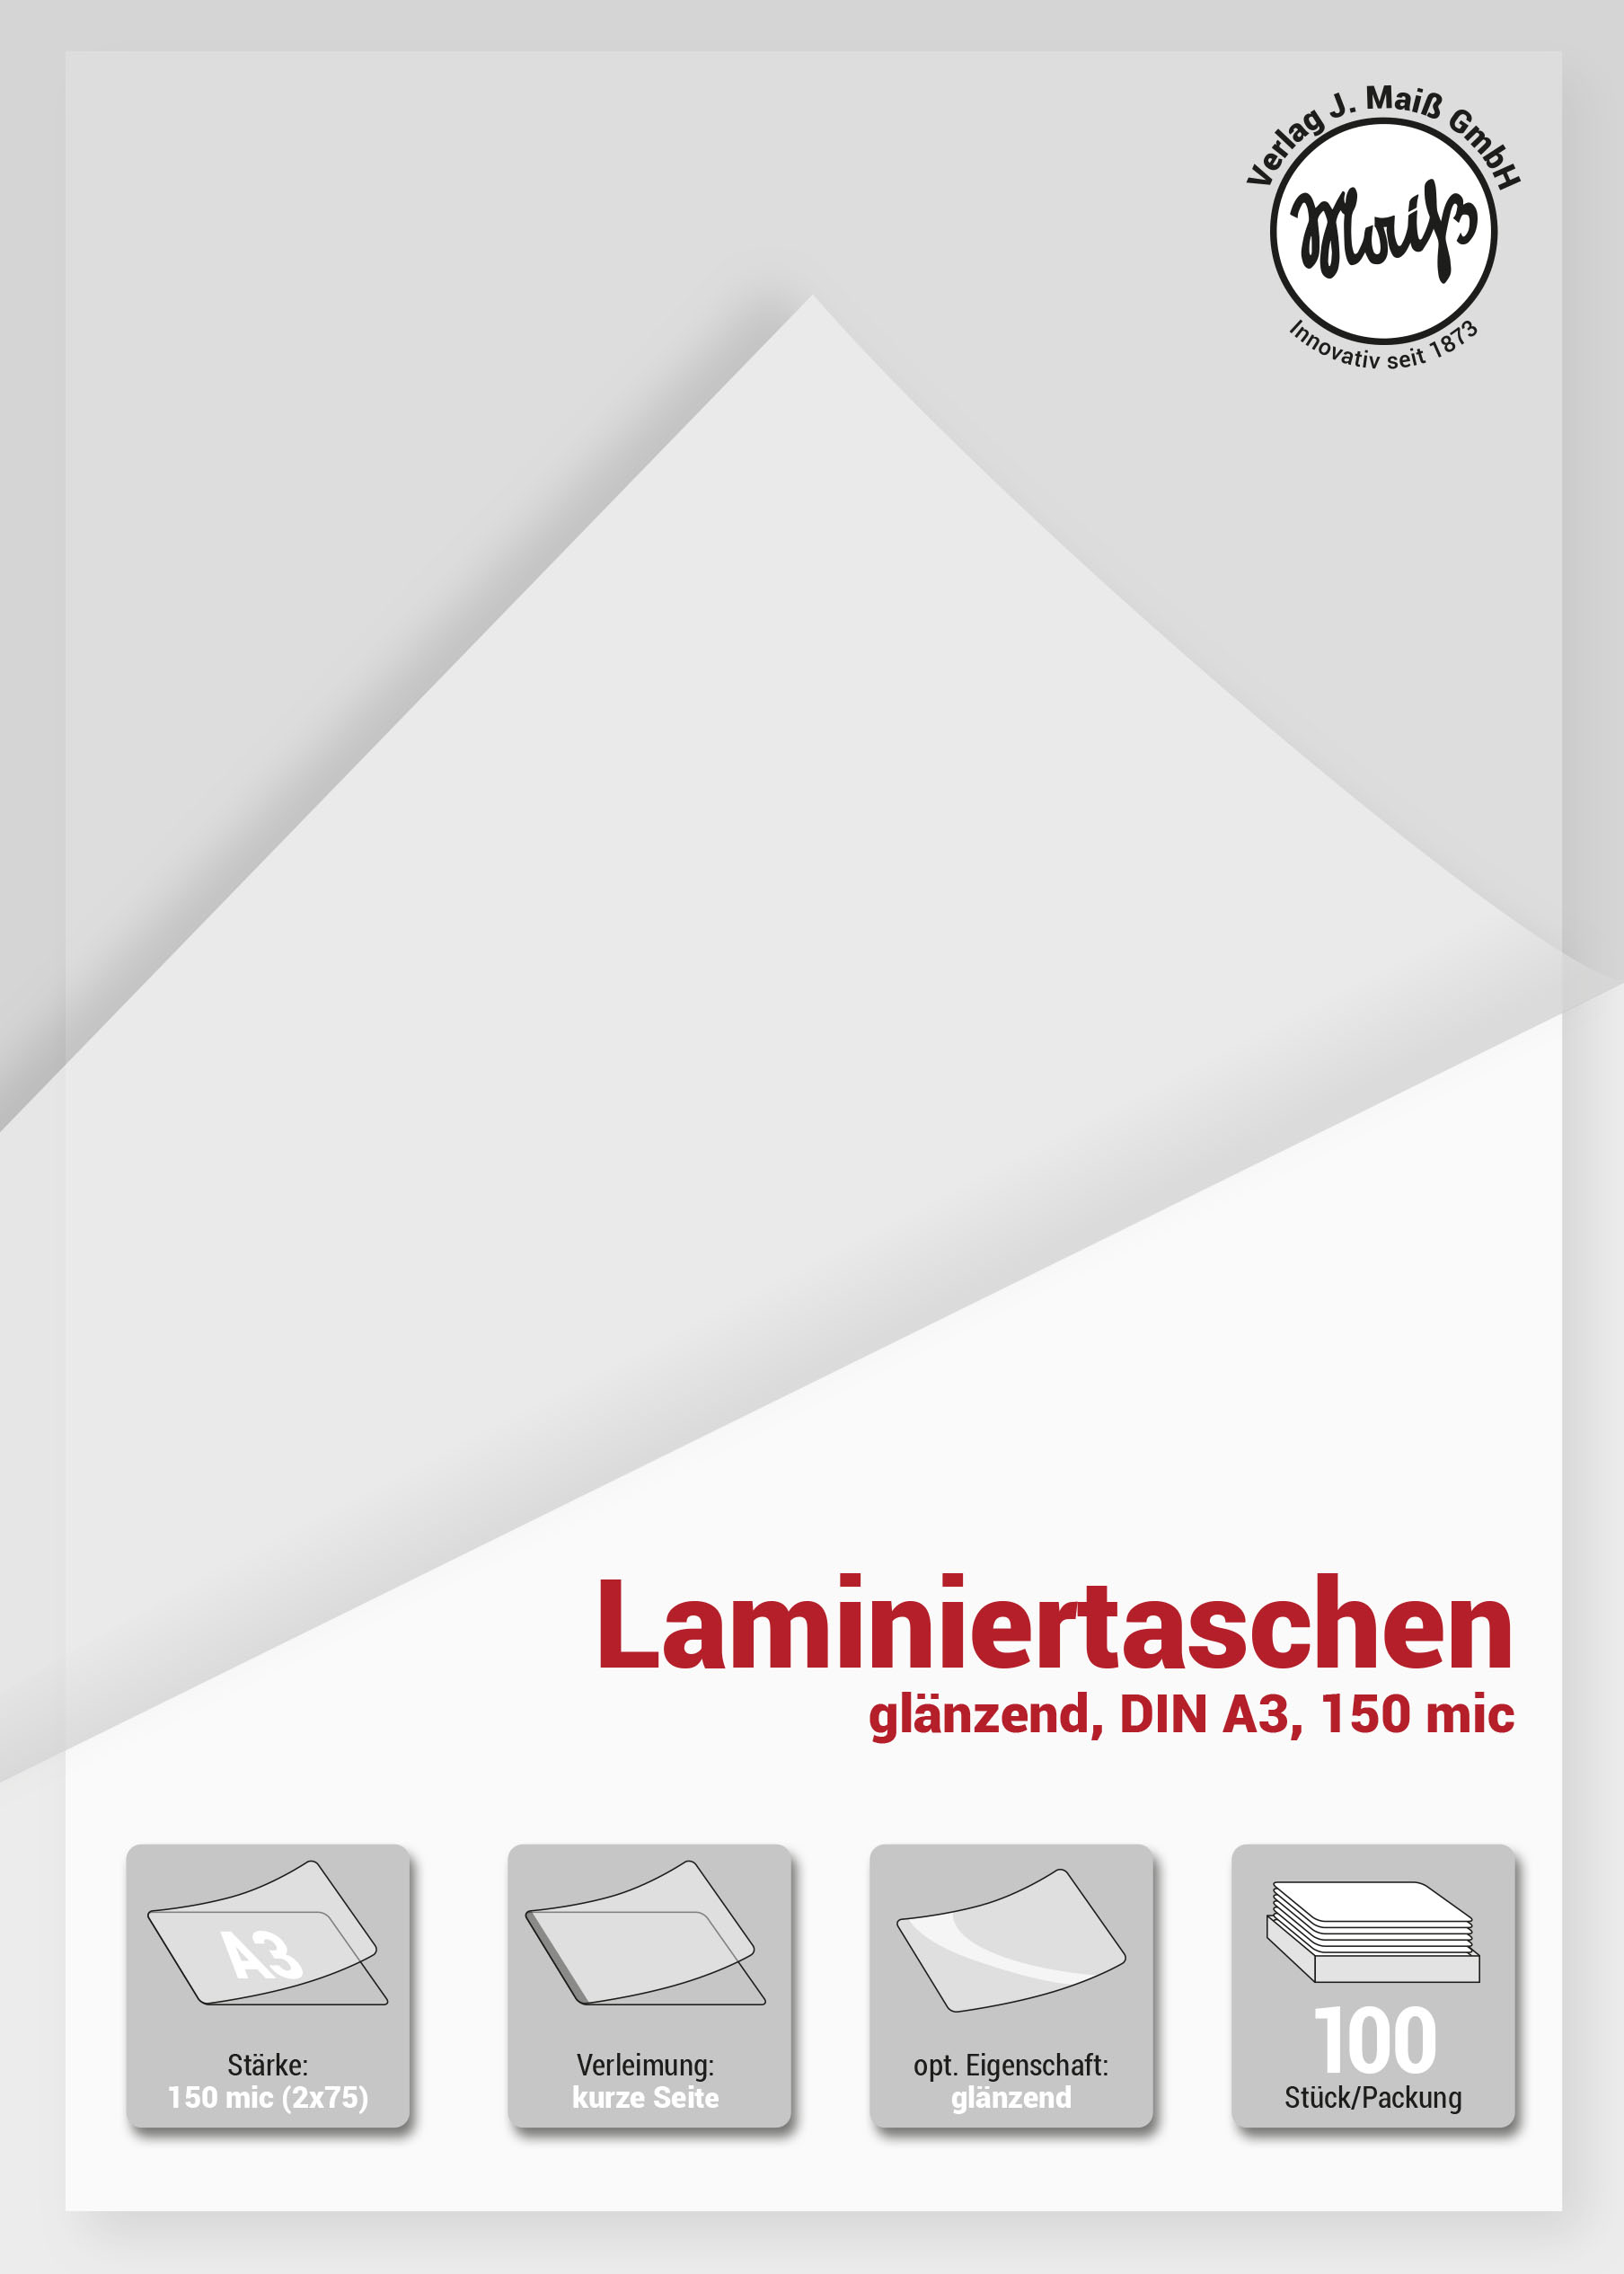 Bild 2 100x Laminierfolien DIN A3, 150 mic (2x75), glänzend, Laminiertaschen